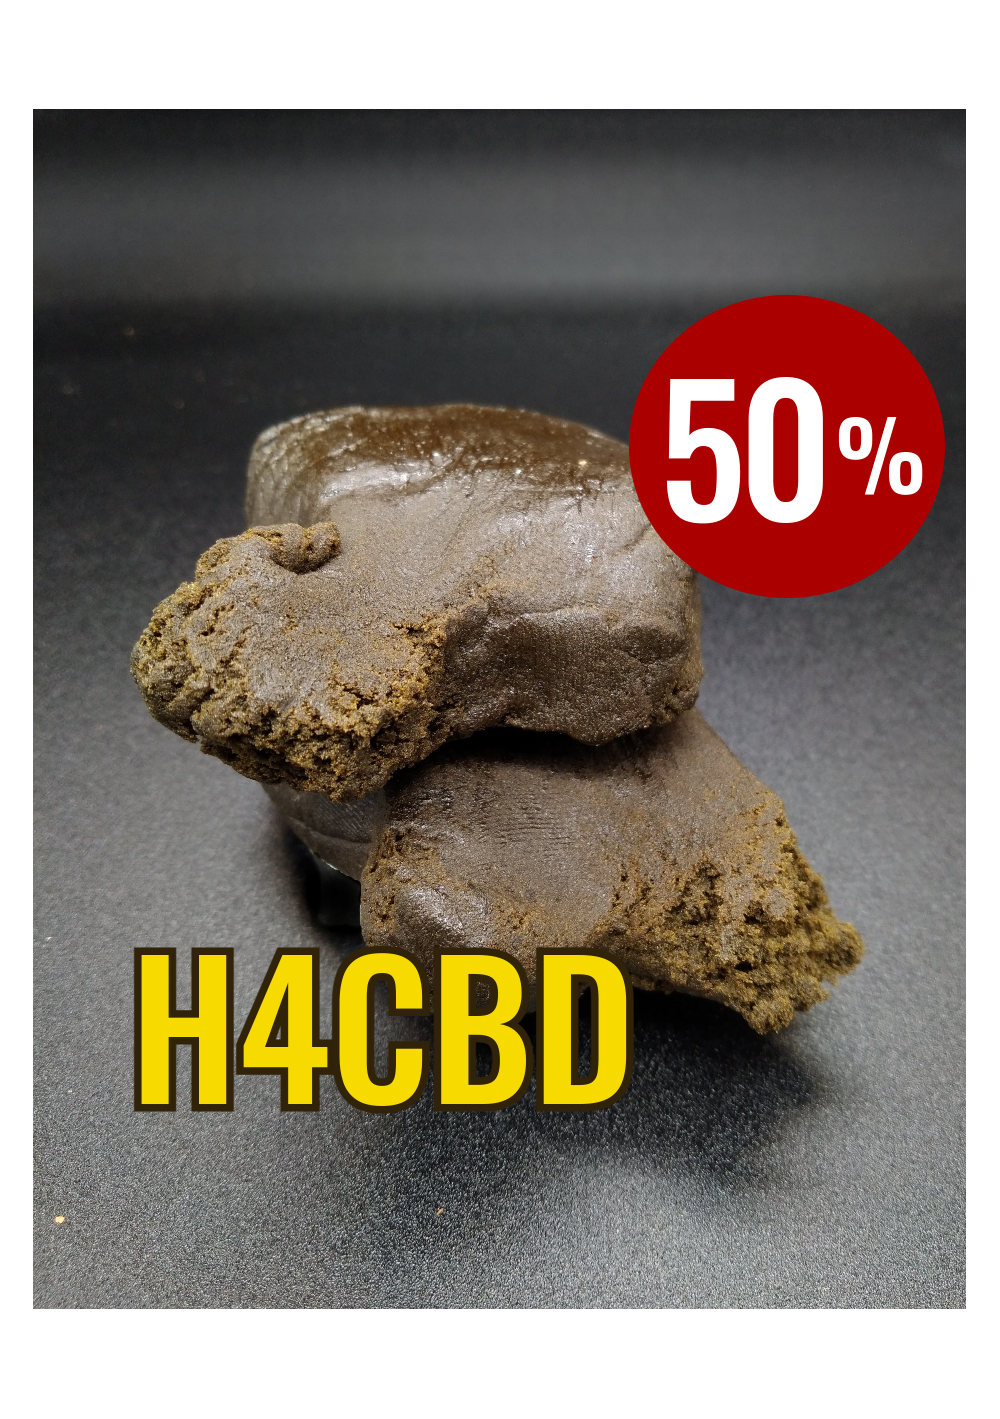 H4 Hash - Nepal ream 50% H4CBD - Special Hashish - Estratto naturalmente